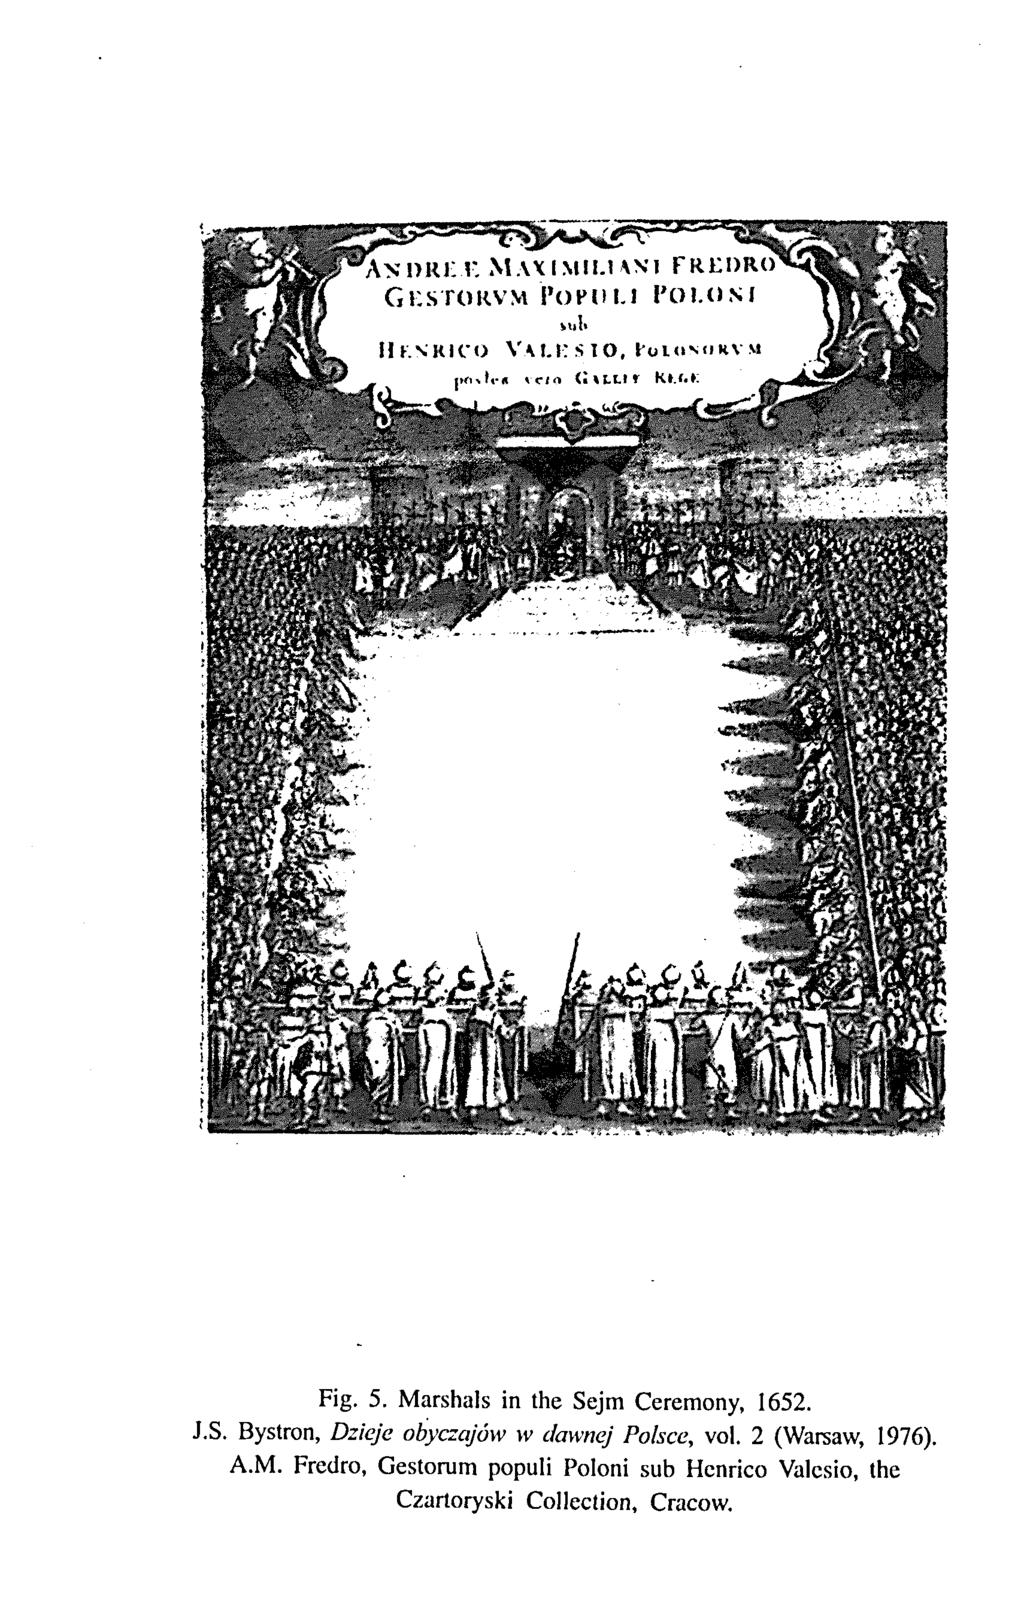 Fig. 5. Marshals in the Sejm Ceremony, 1652. J.S. Bystron, Dzieje obyczajow w tlawnej Polsce, vol.